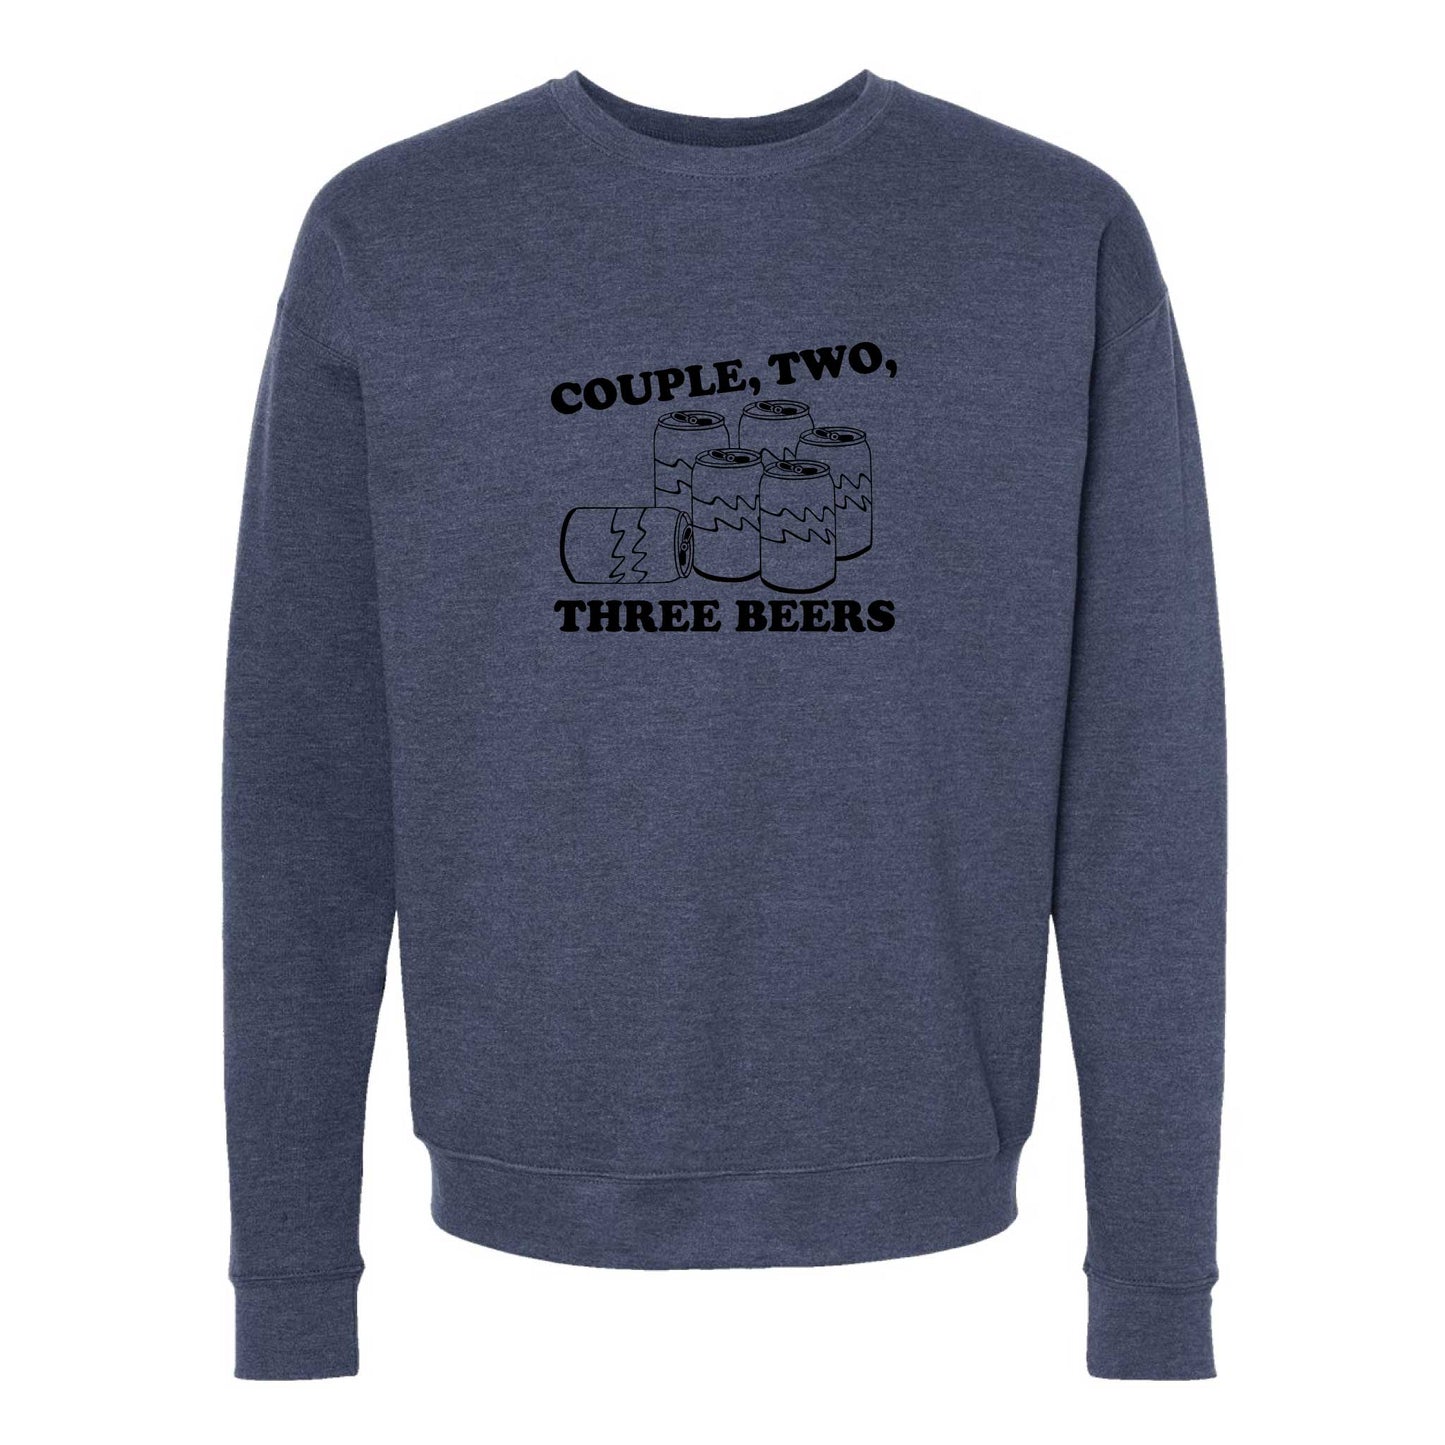 Couple, Two, Three Beers Crewneck Sweatshirt